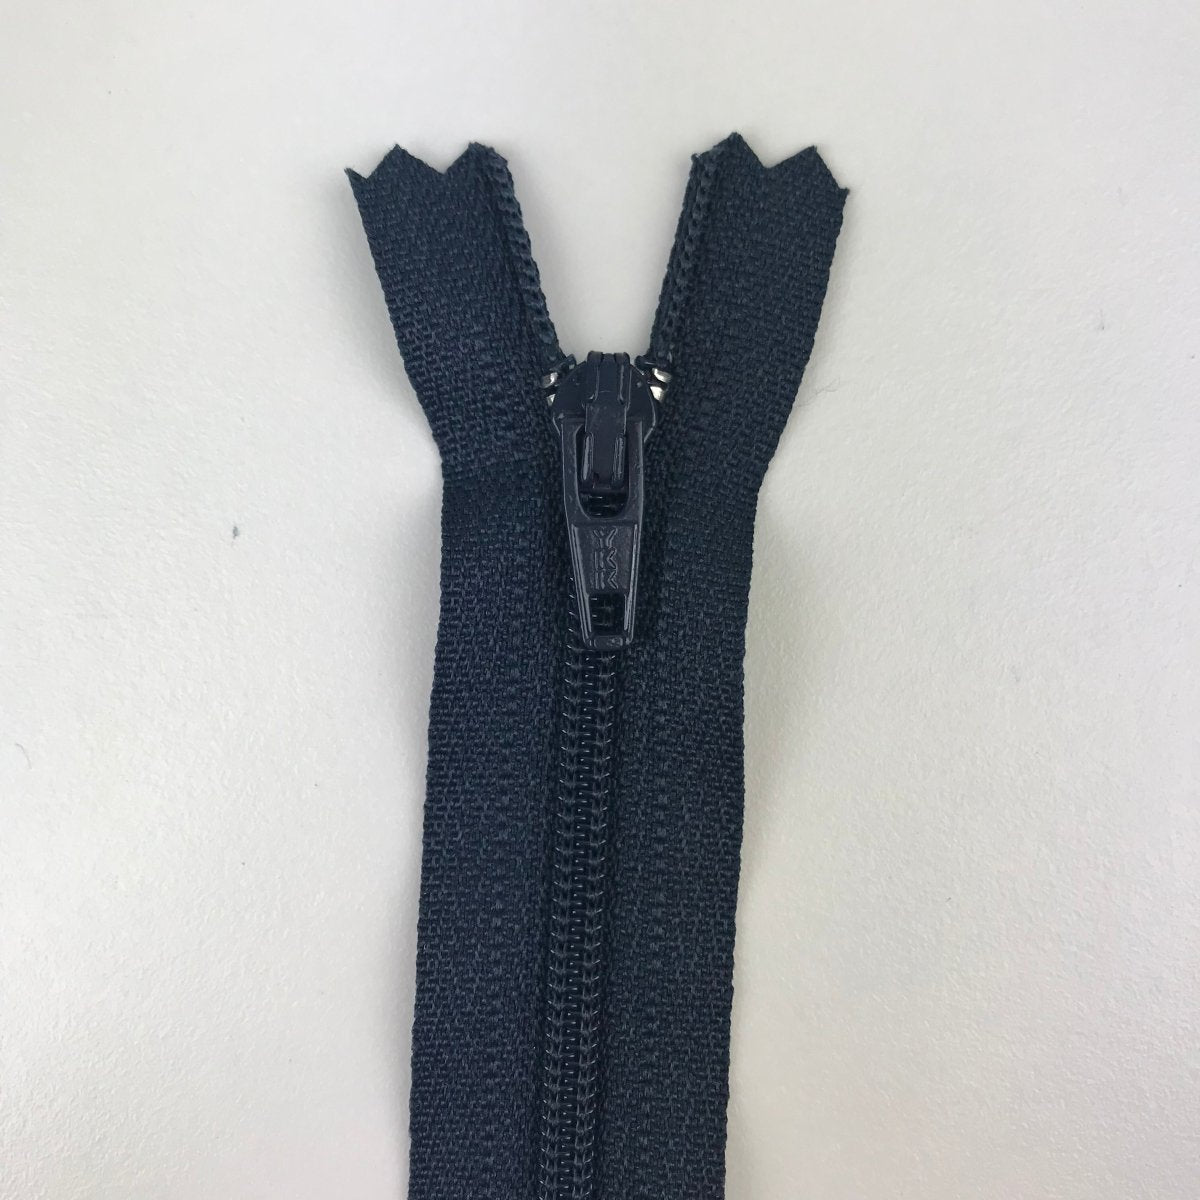 YKK Zipper - Skirt and Dress - 61cm (24") - Sewing Gem